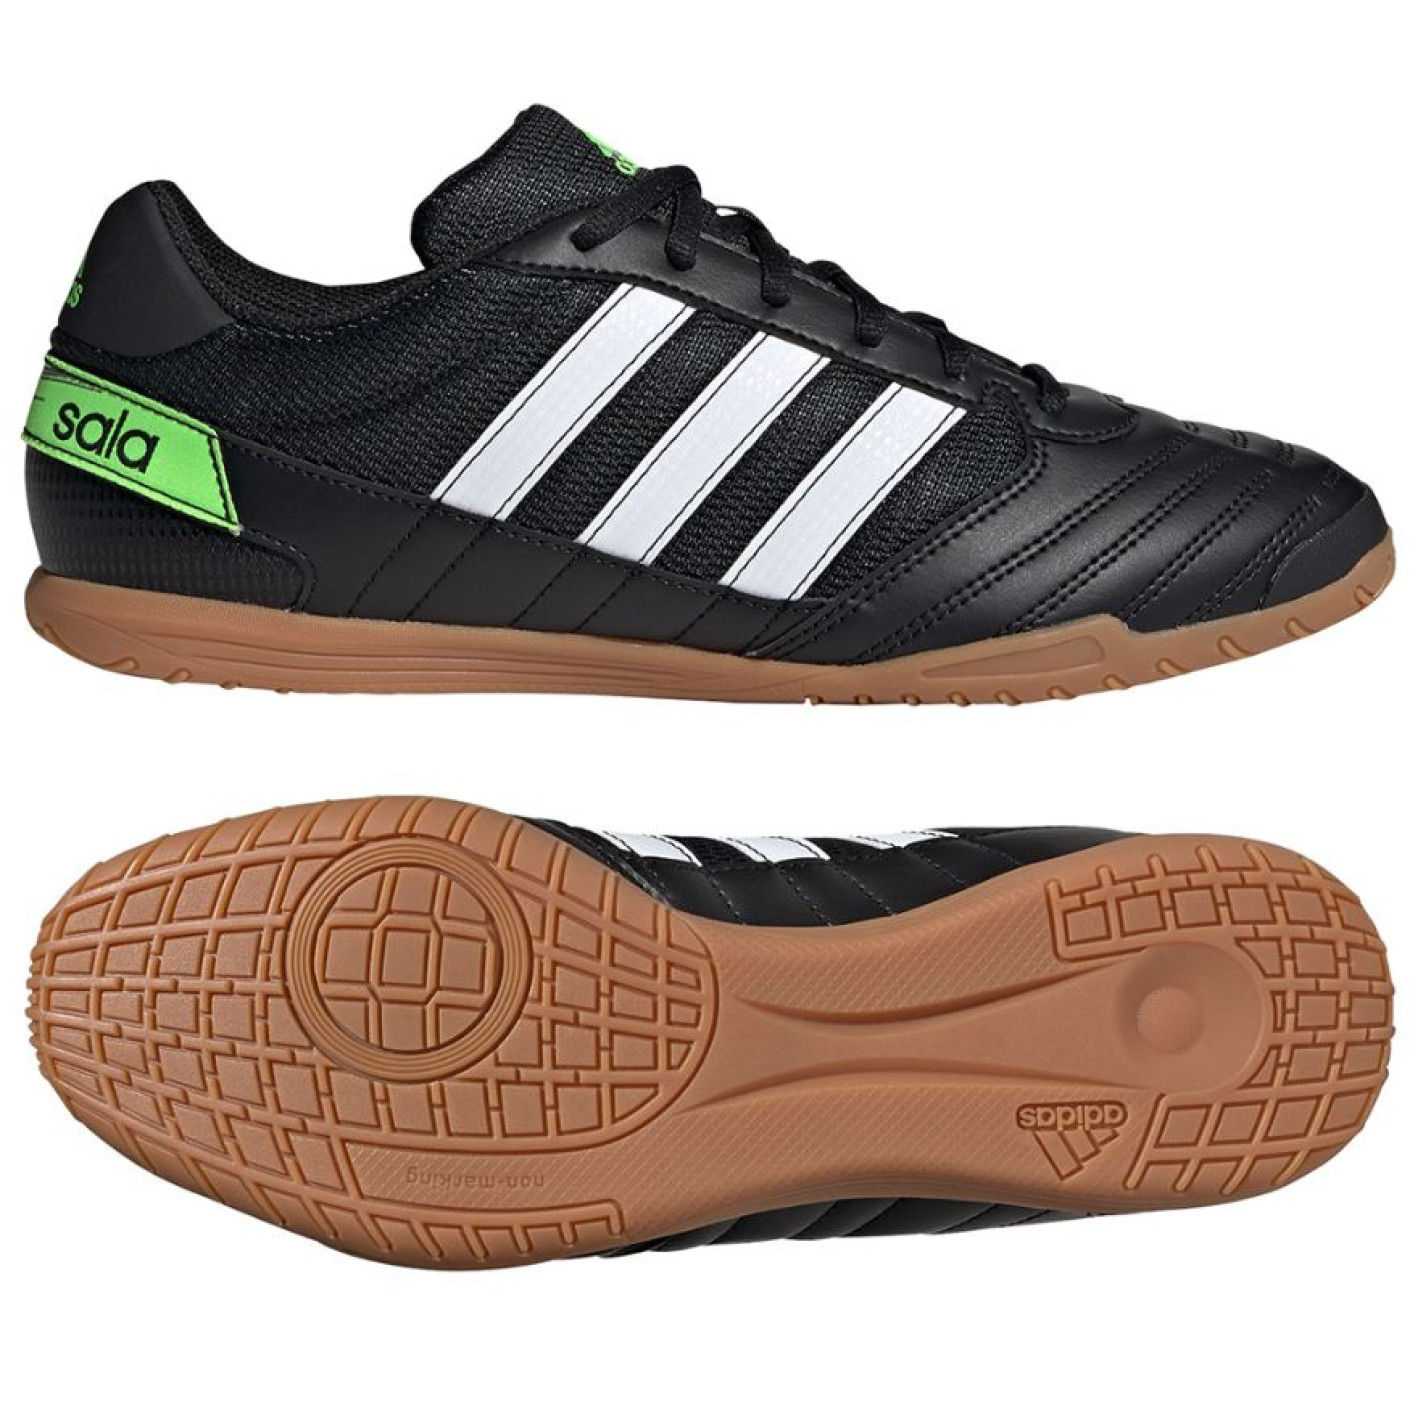 Chaussures de football en salle adidas Super Sala (IN) Noir/blanc/vert